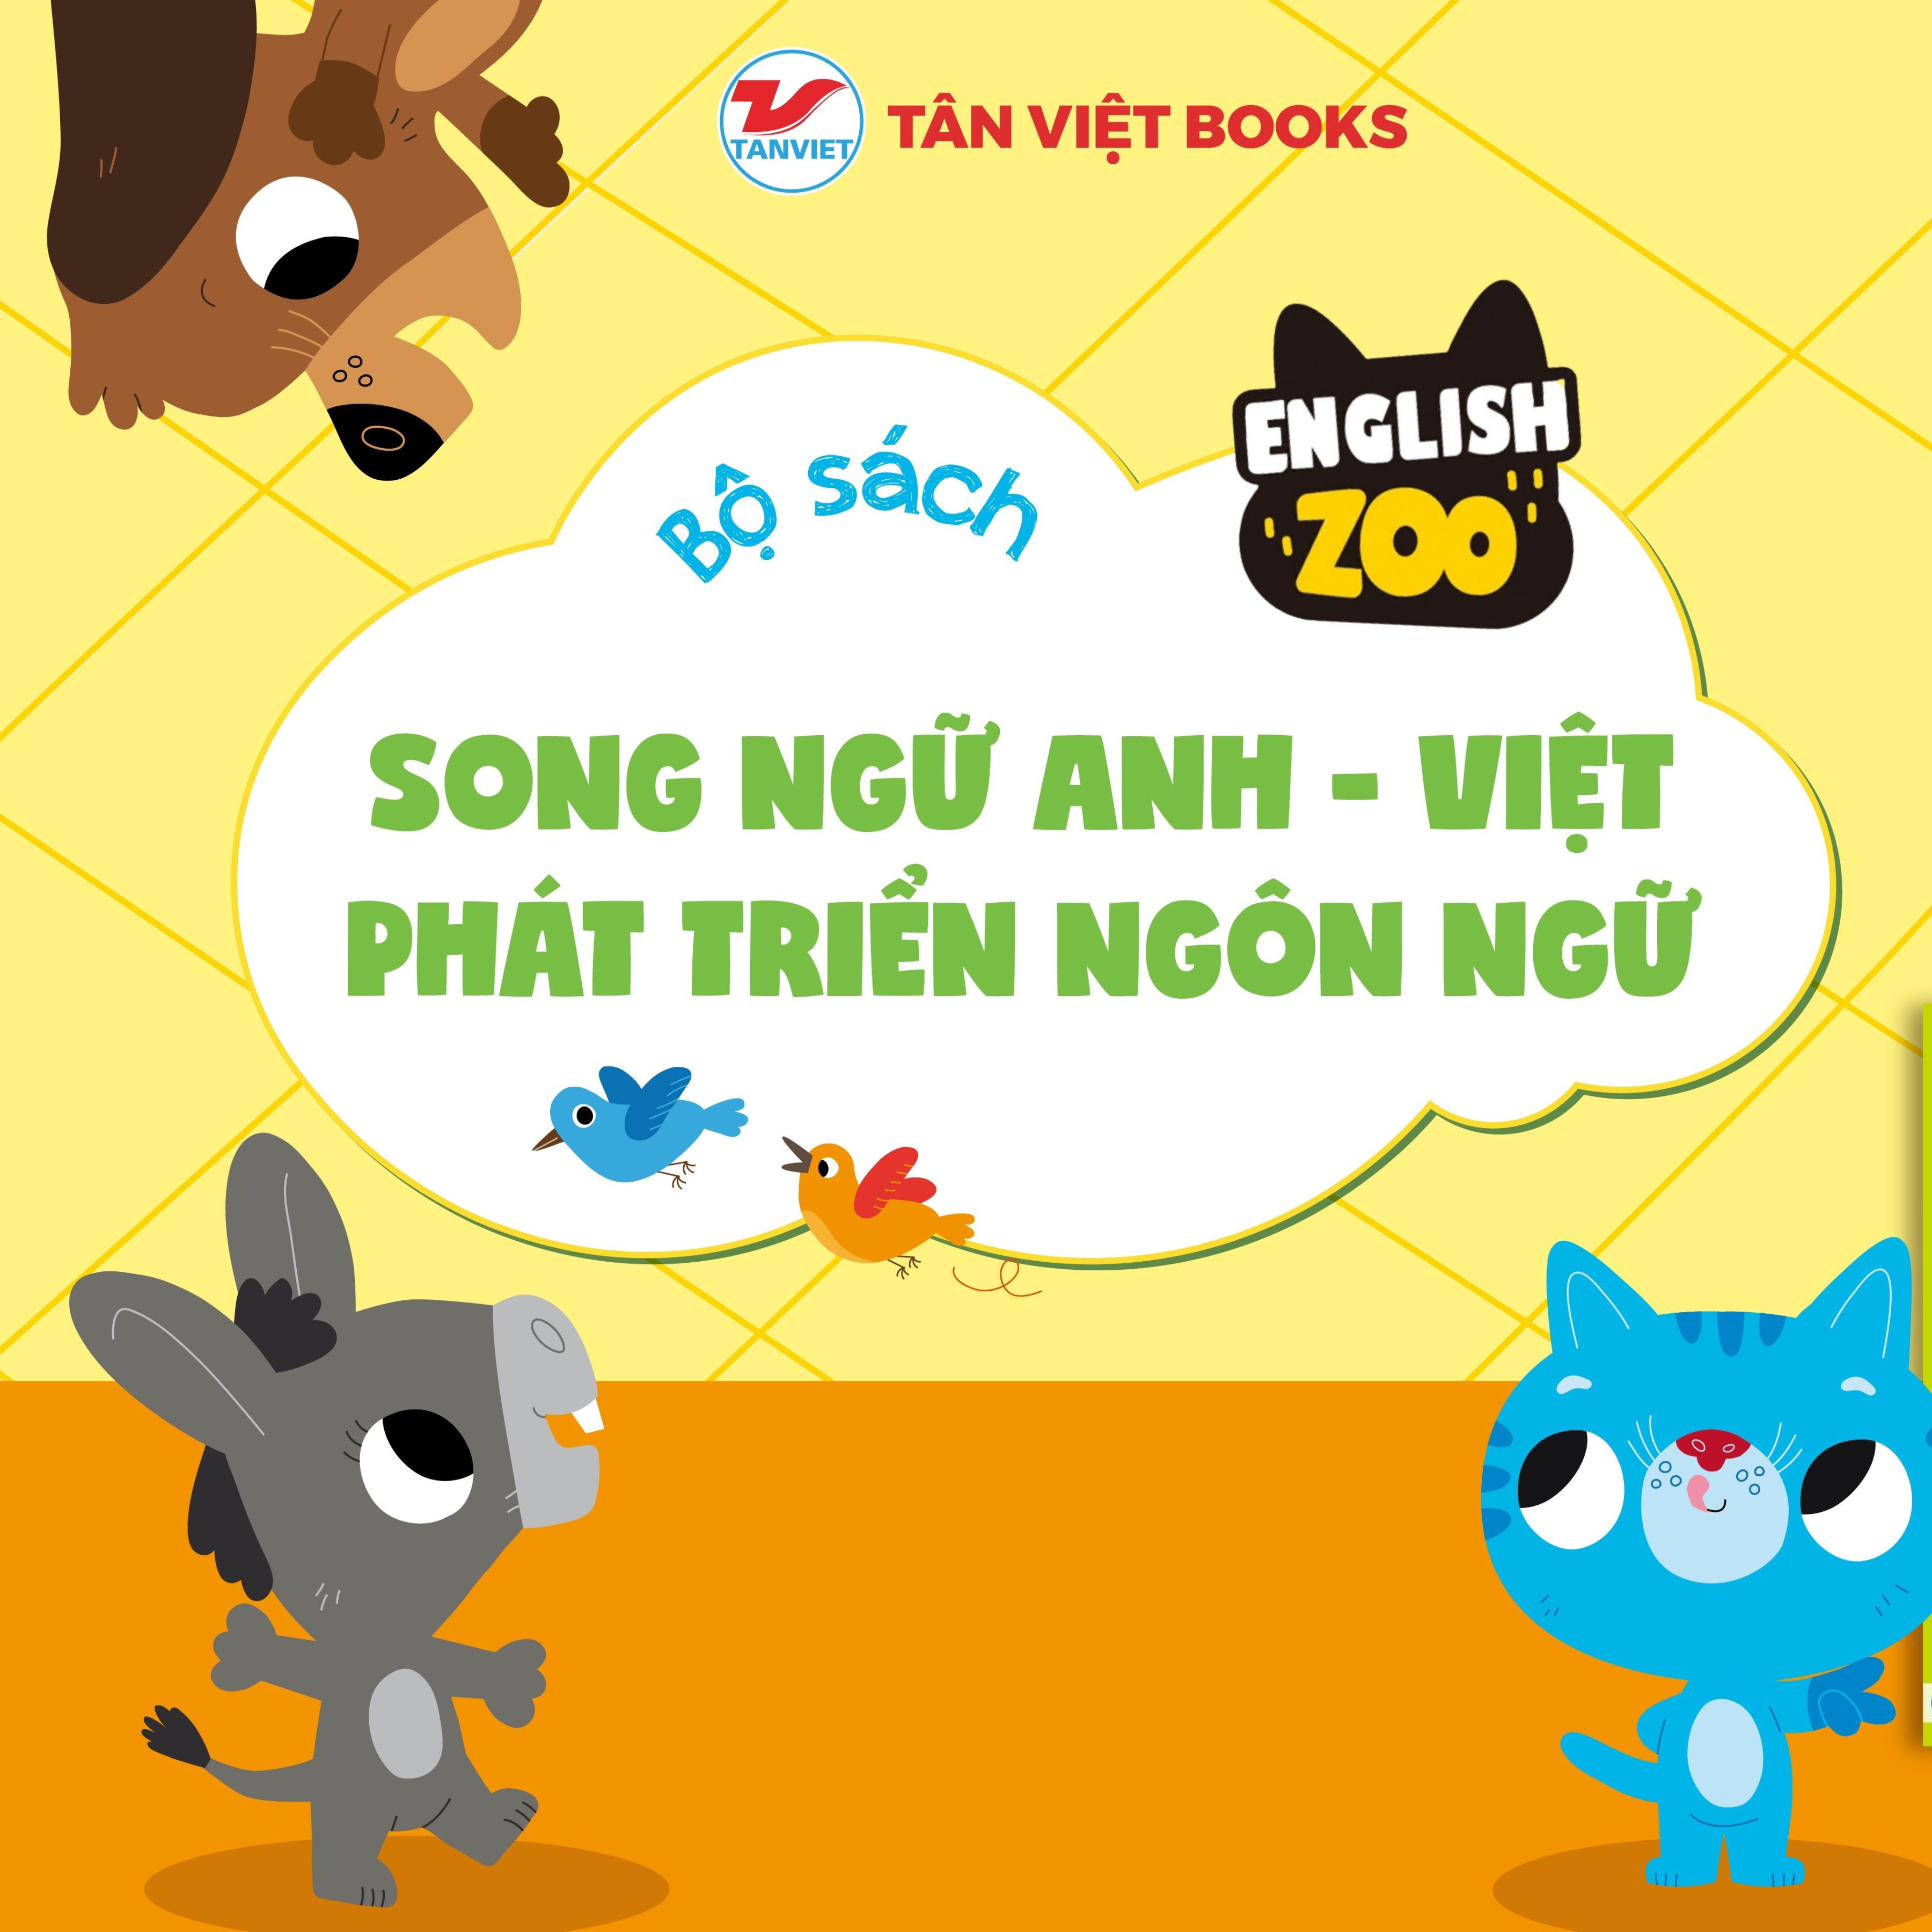 English Zoo: Sách song ngữ Anh - Việt giúp trẻ phát triển ngôn ngữ